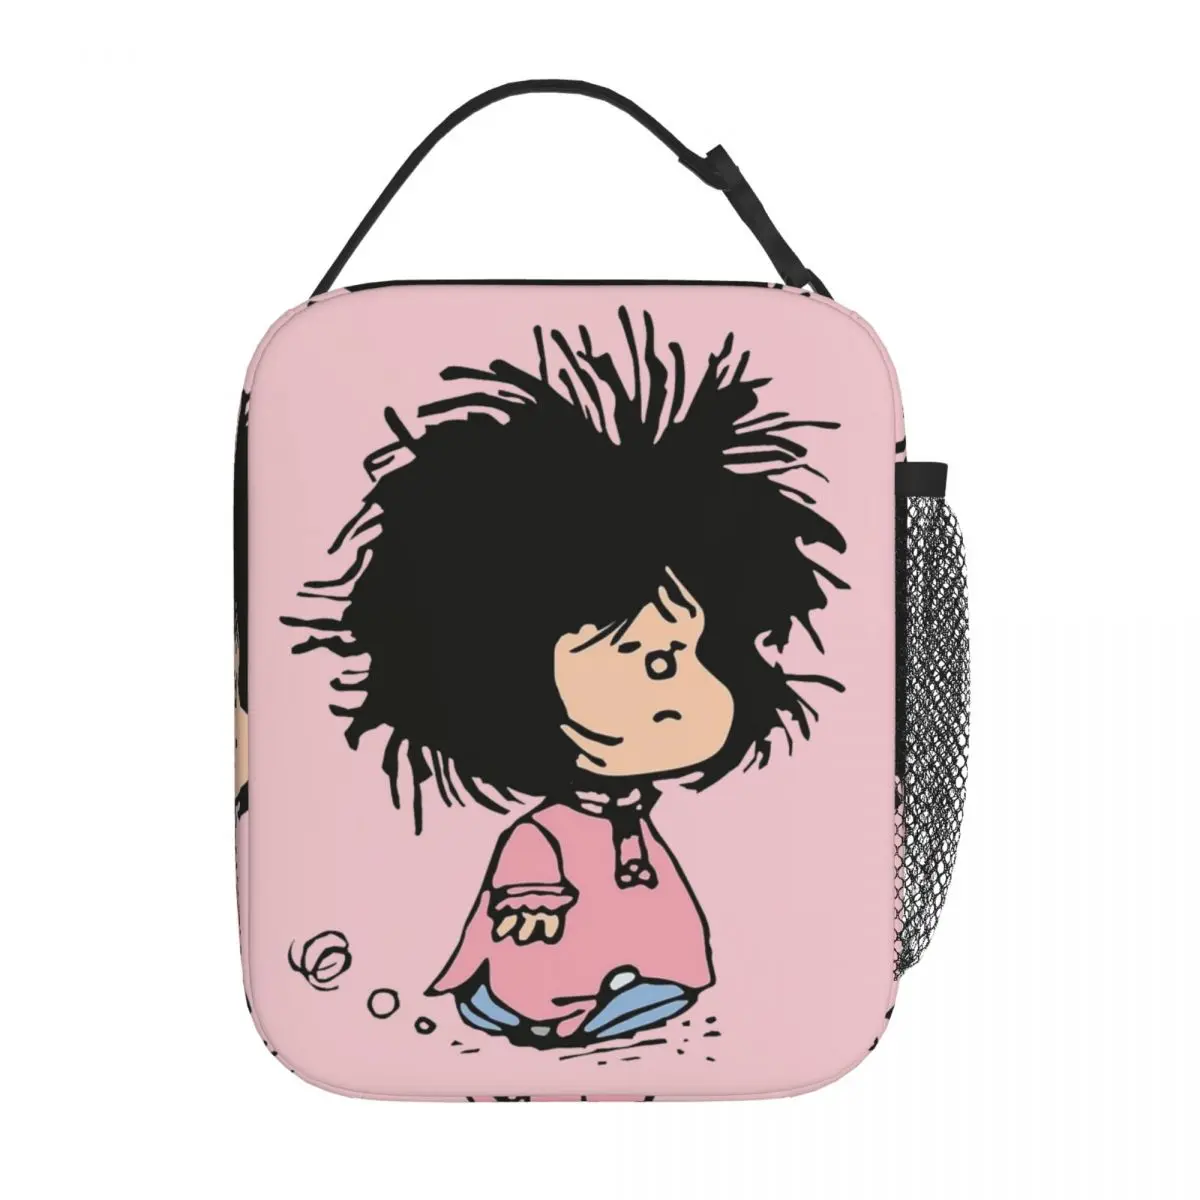 Sleepy Mafalda Забавные аксессуары Изолированный ланч-пакет для школы Контейнер для еды Портативный термоохладитель ланч-бокс